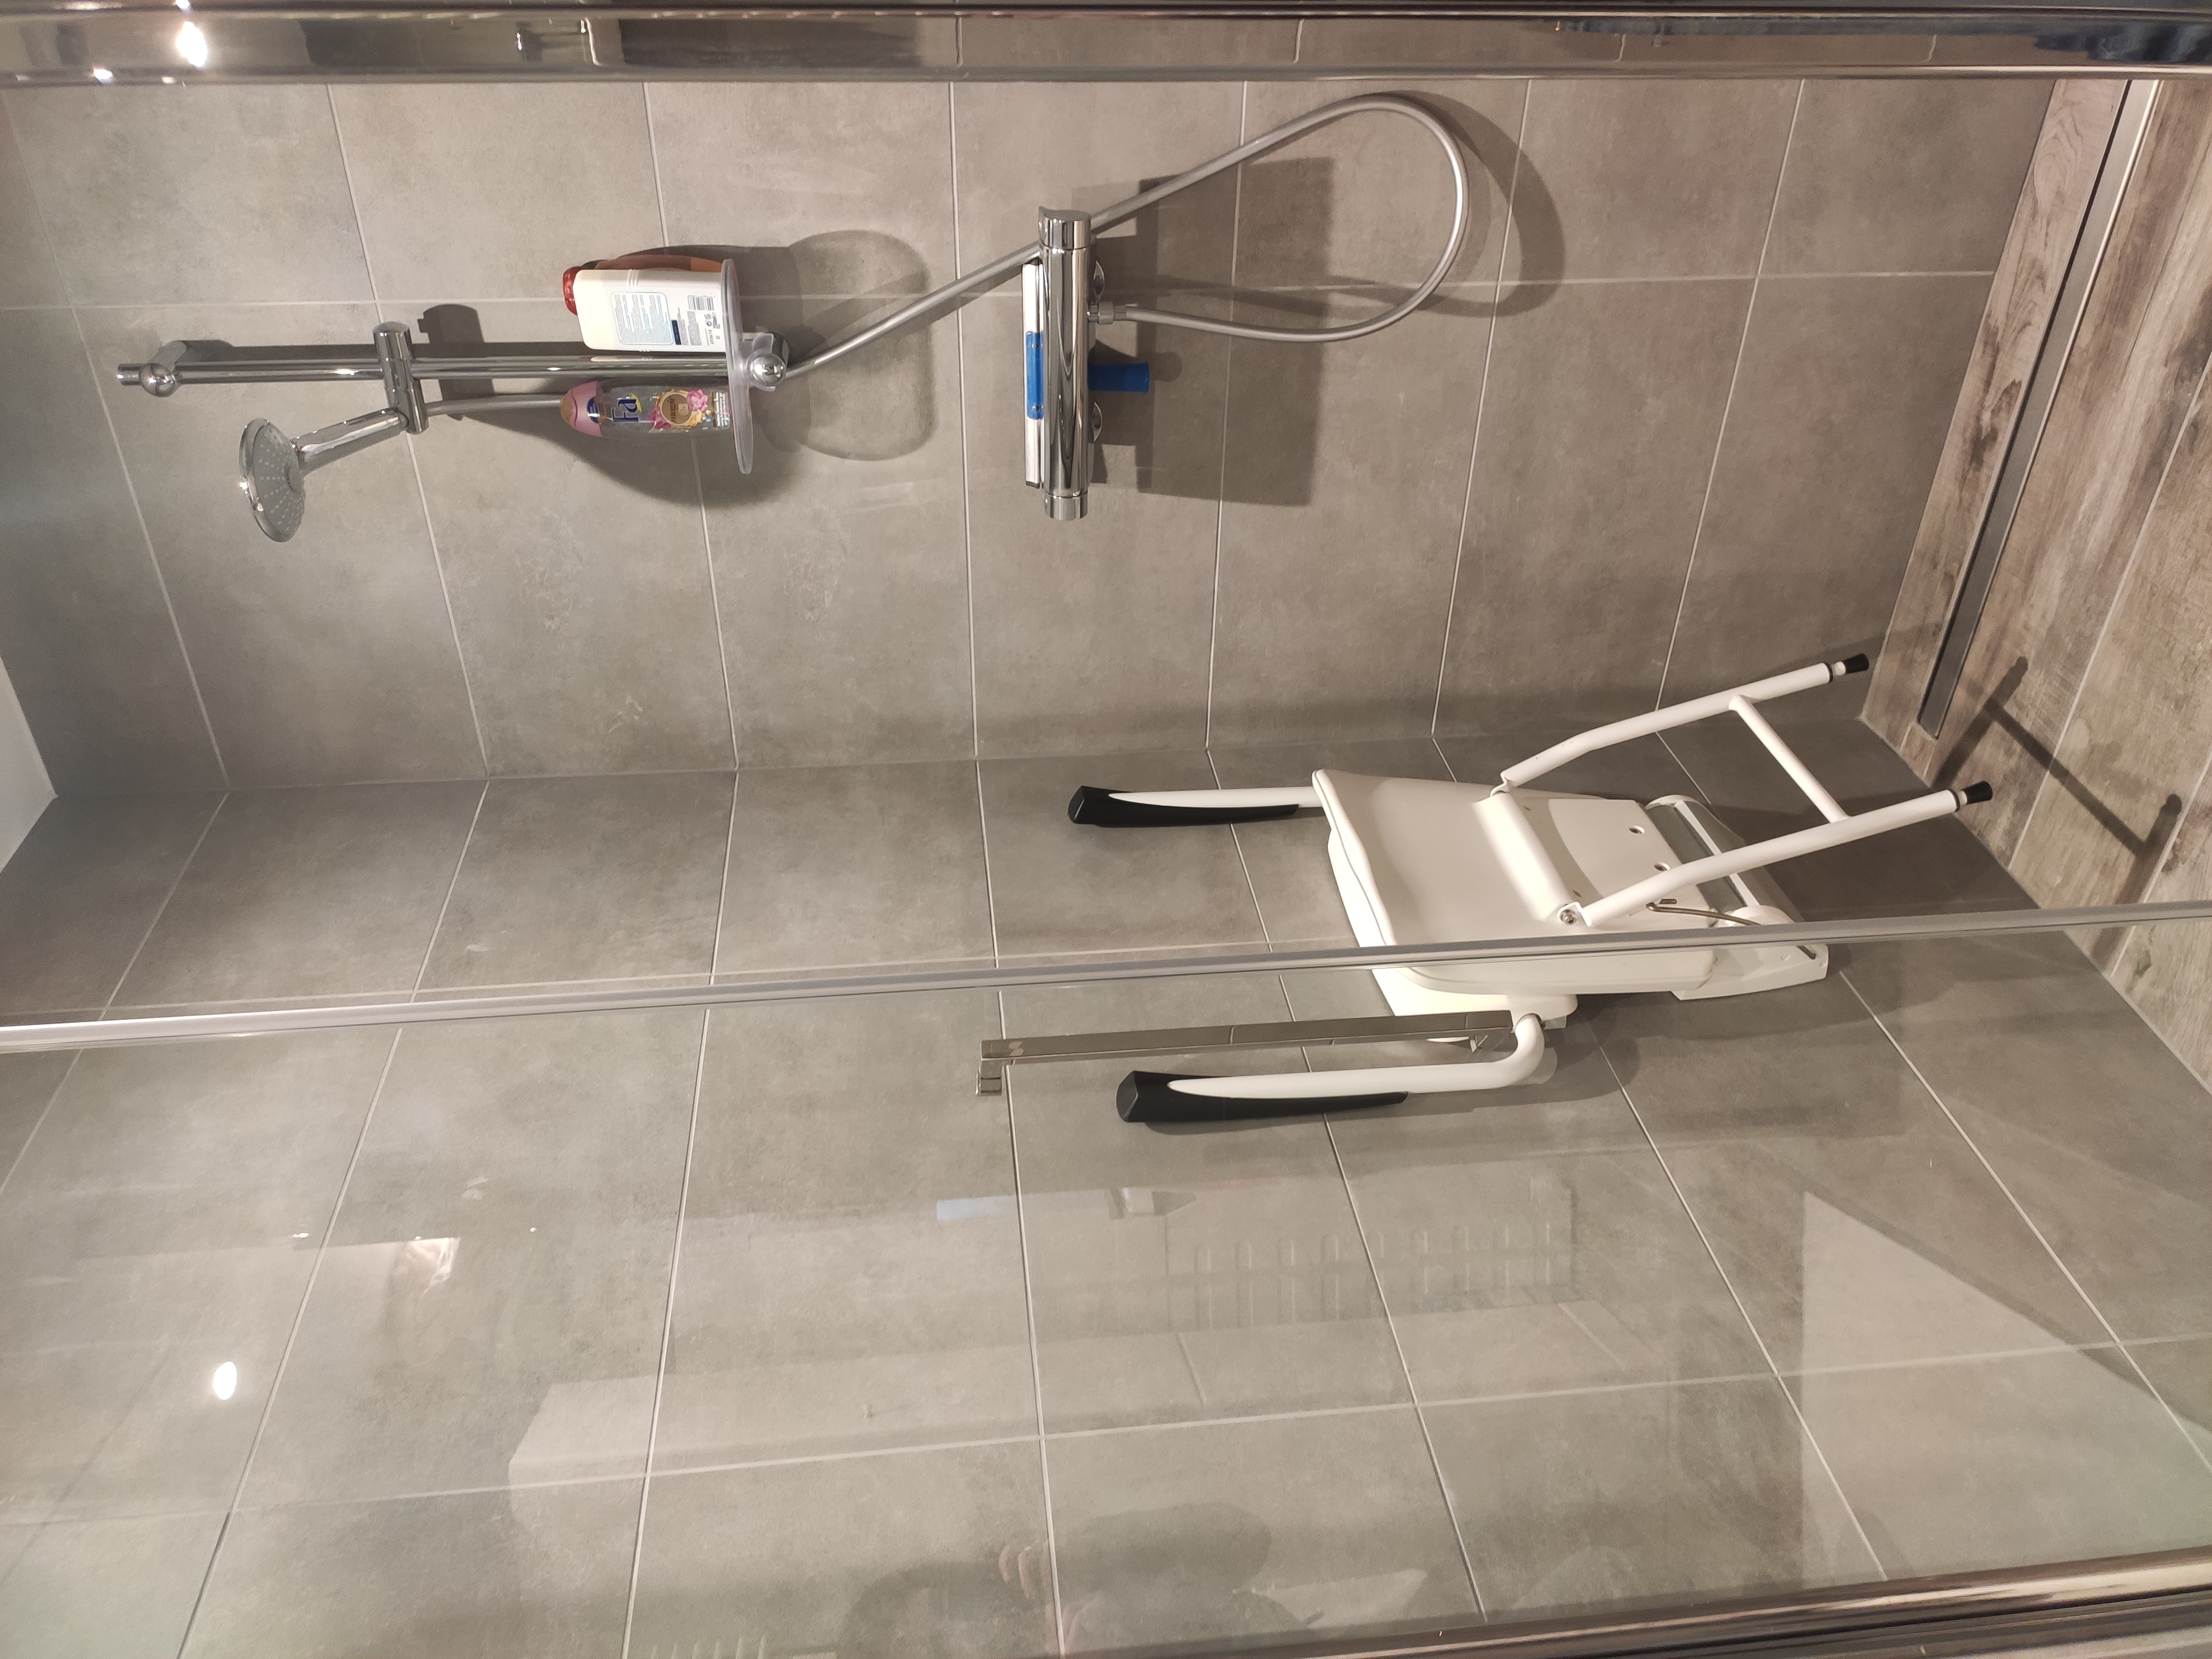 Een aangepaste douche met douchestoeltje voor rolstoelgebruikers.